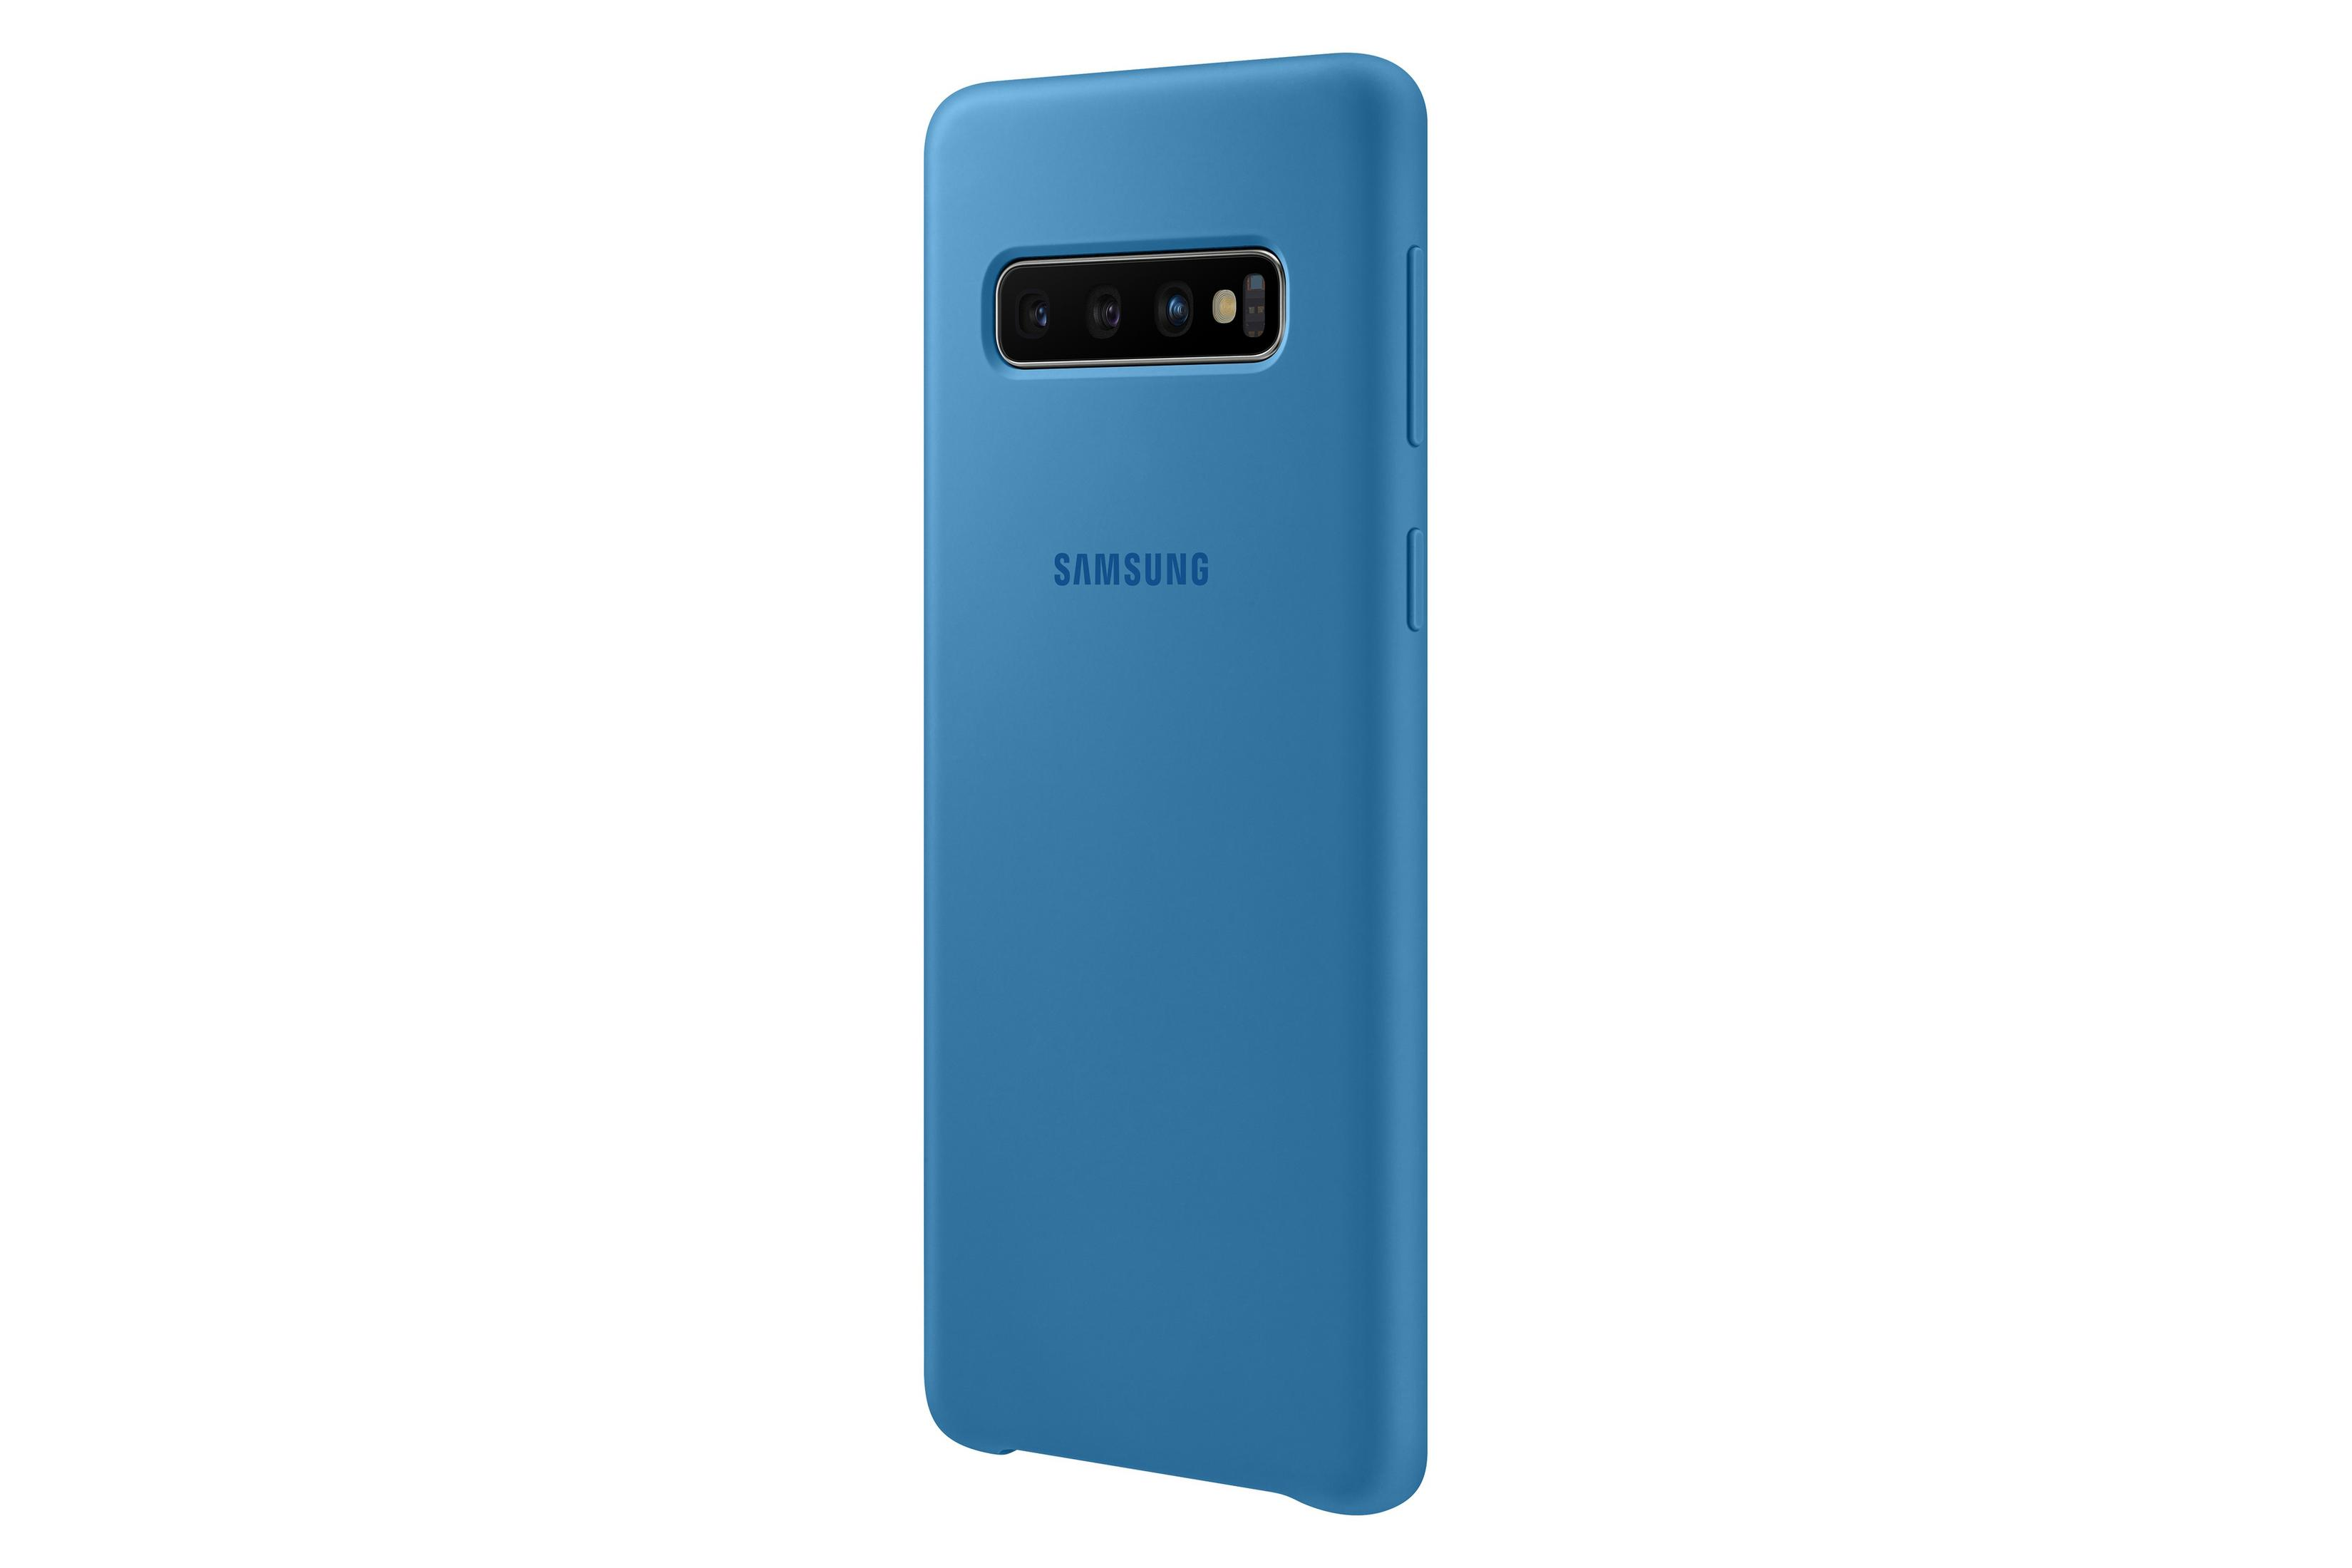 S10 Backcover, S10, BLUE, COVER Samsung, SILICONE Blau SAMSUNG EF-PG973TLEGWW Galaxy